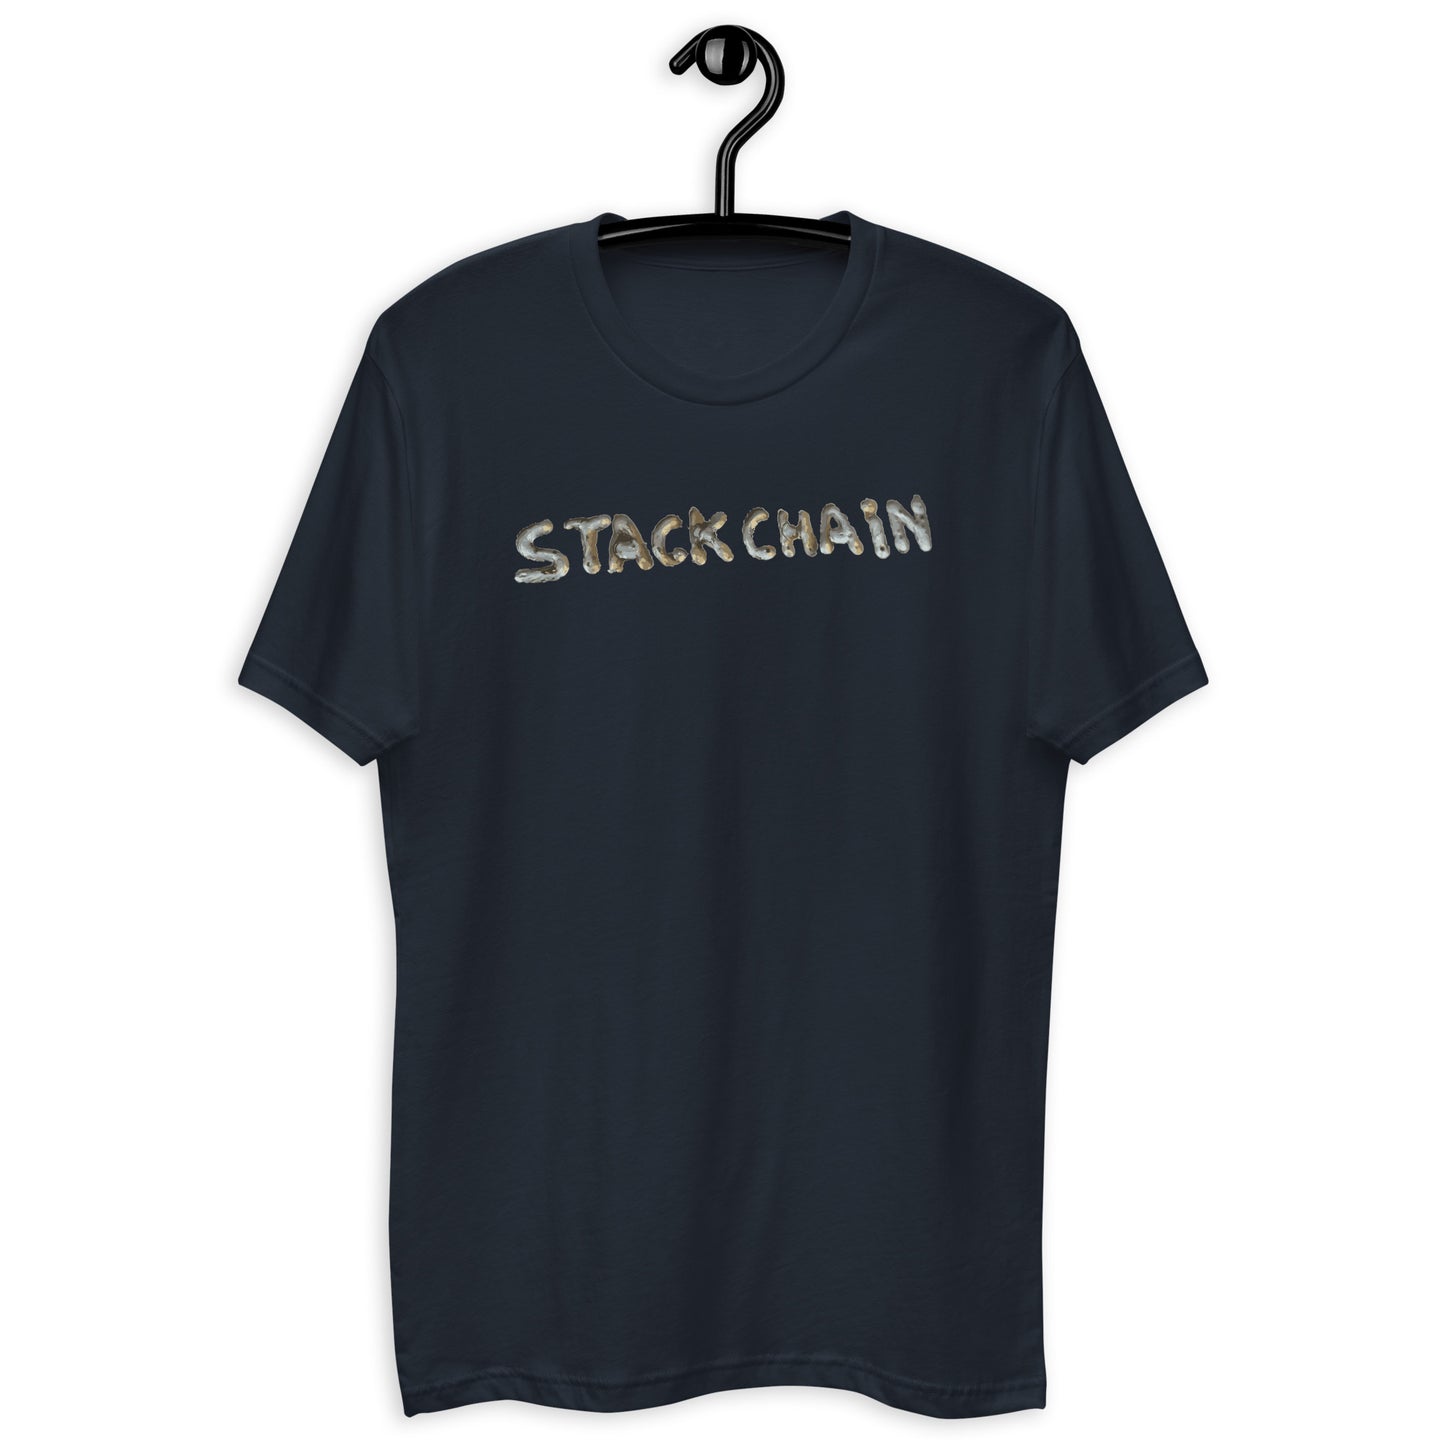 Stackchain